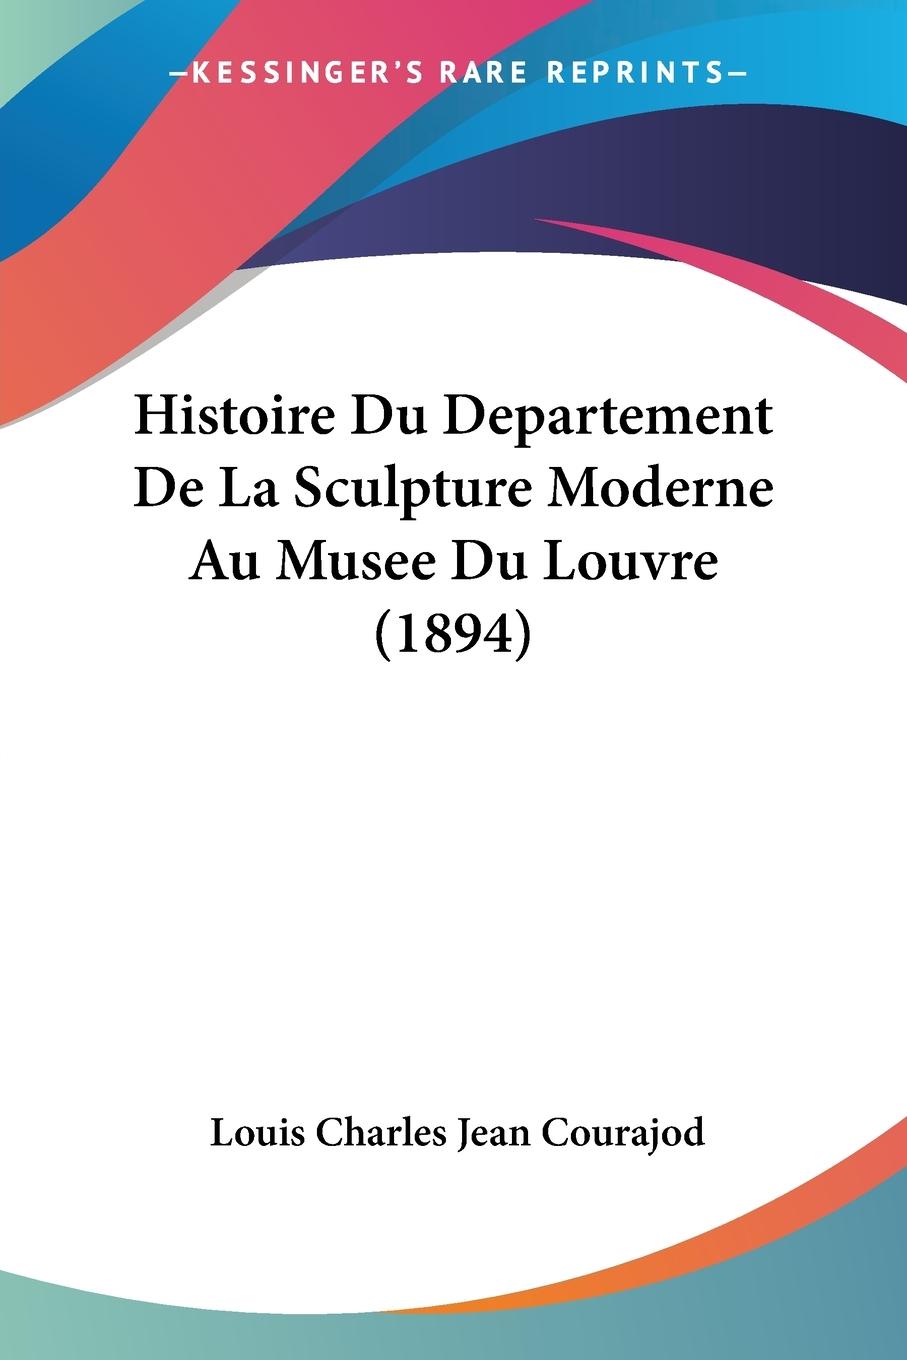 Histoire Du Departement De La Sculpture Moderne Au Musee Du Louvre (1894) - Courajod, Louis Charles Jean